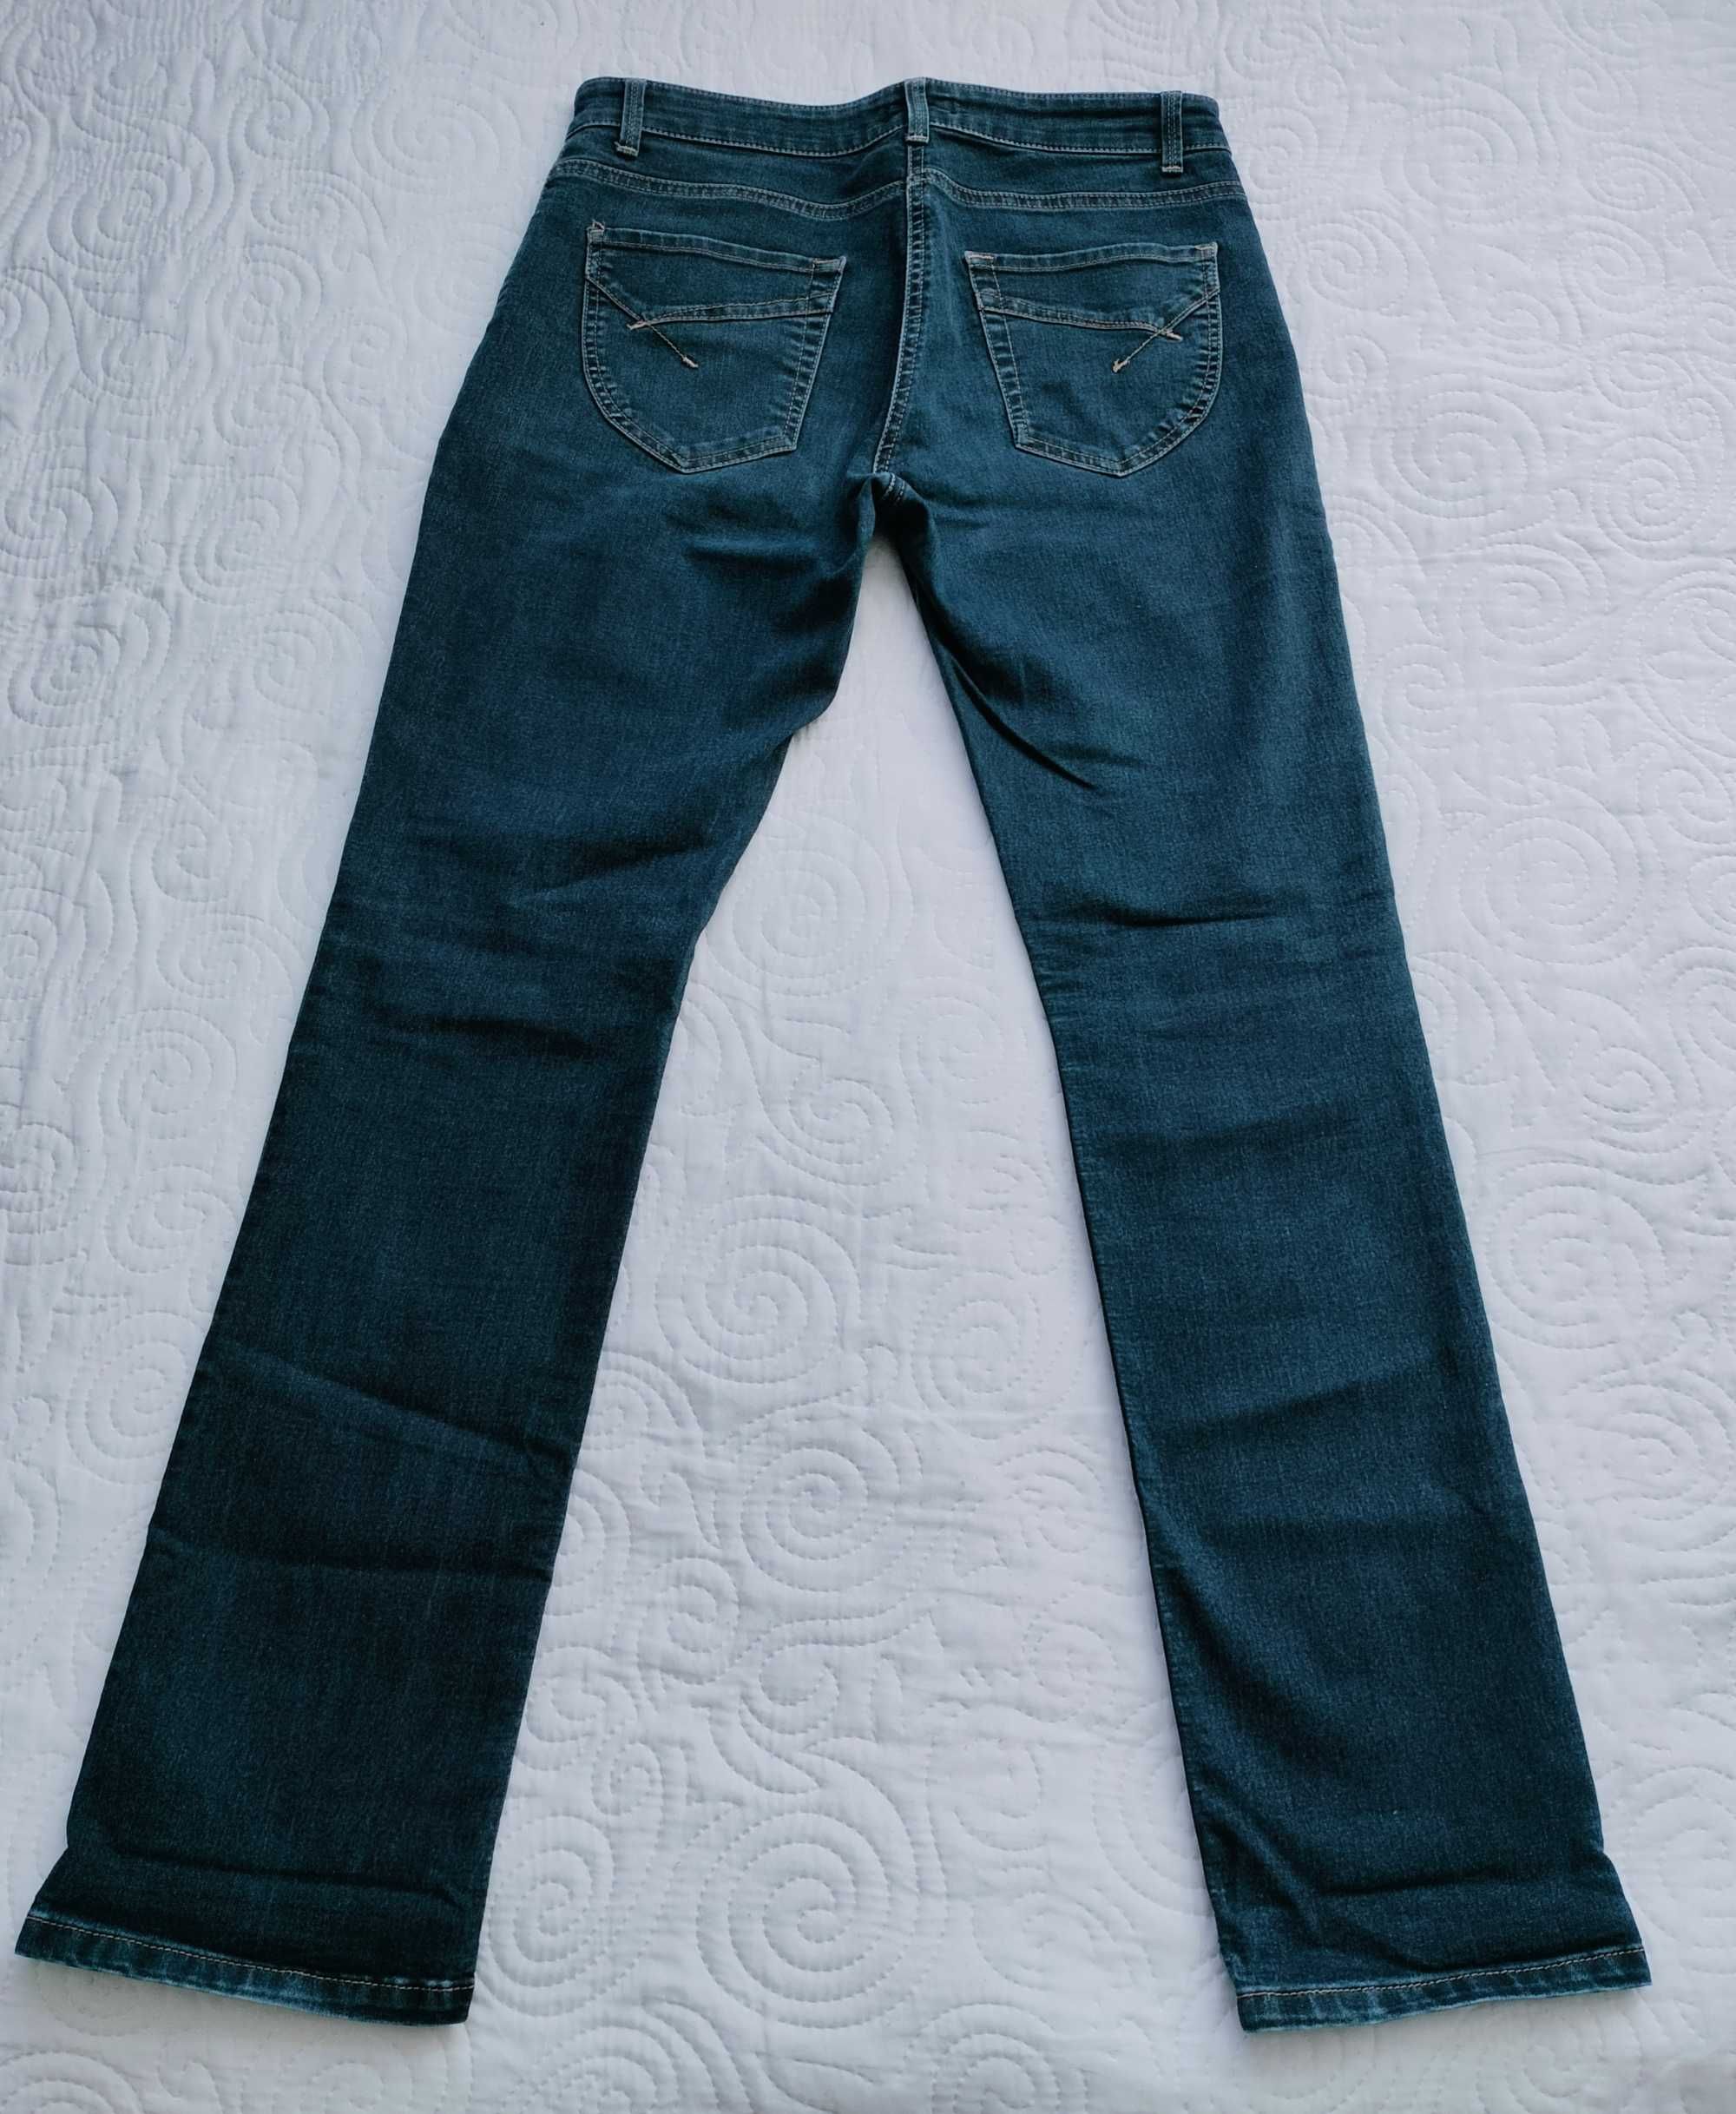 Spodnie dżinsowe, ciemne niebieskie, Wallis, rozmiar 40.